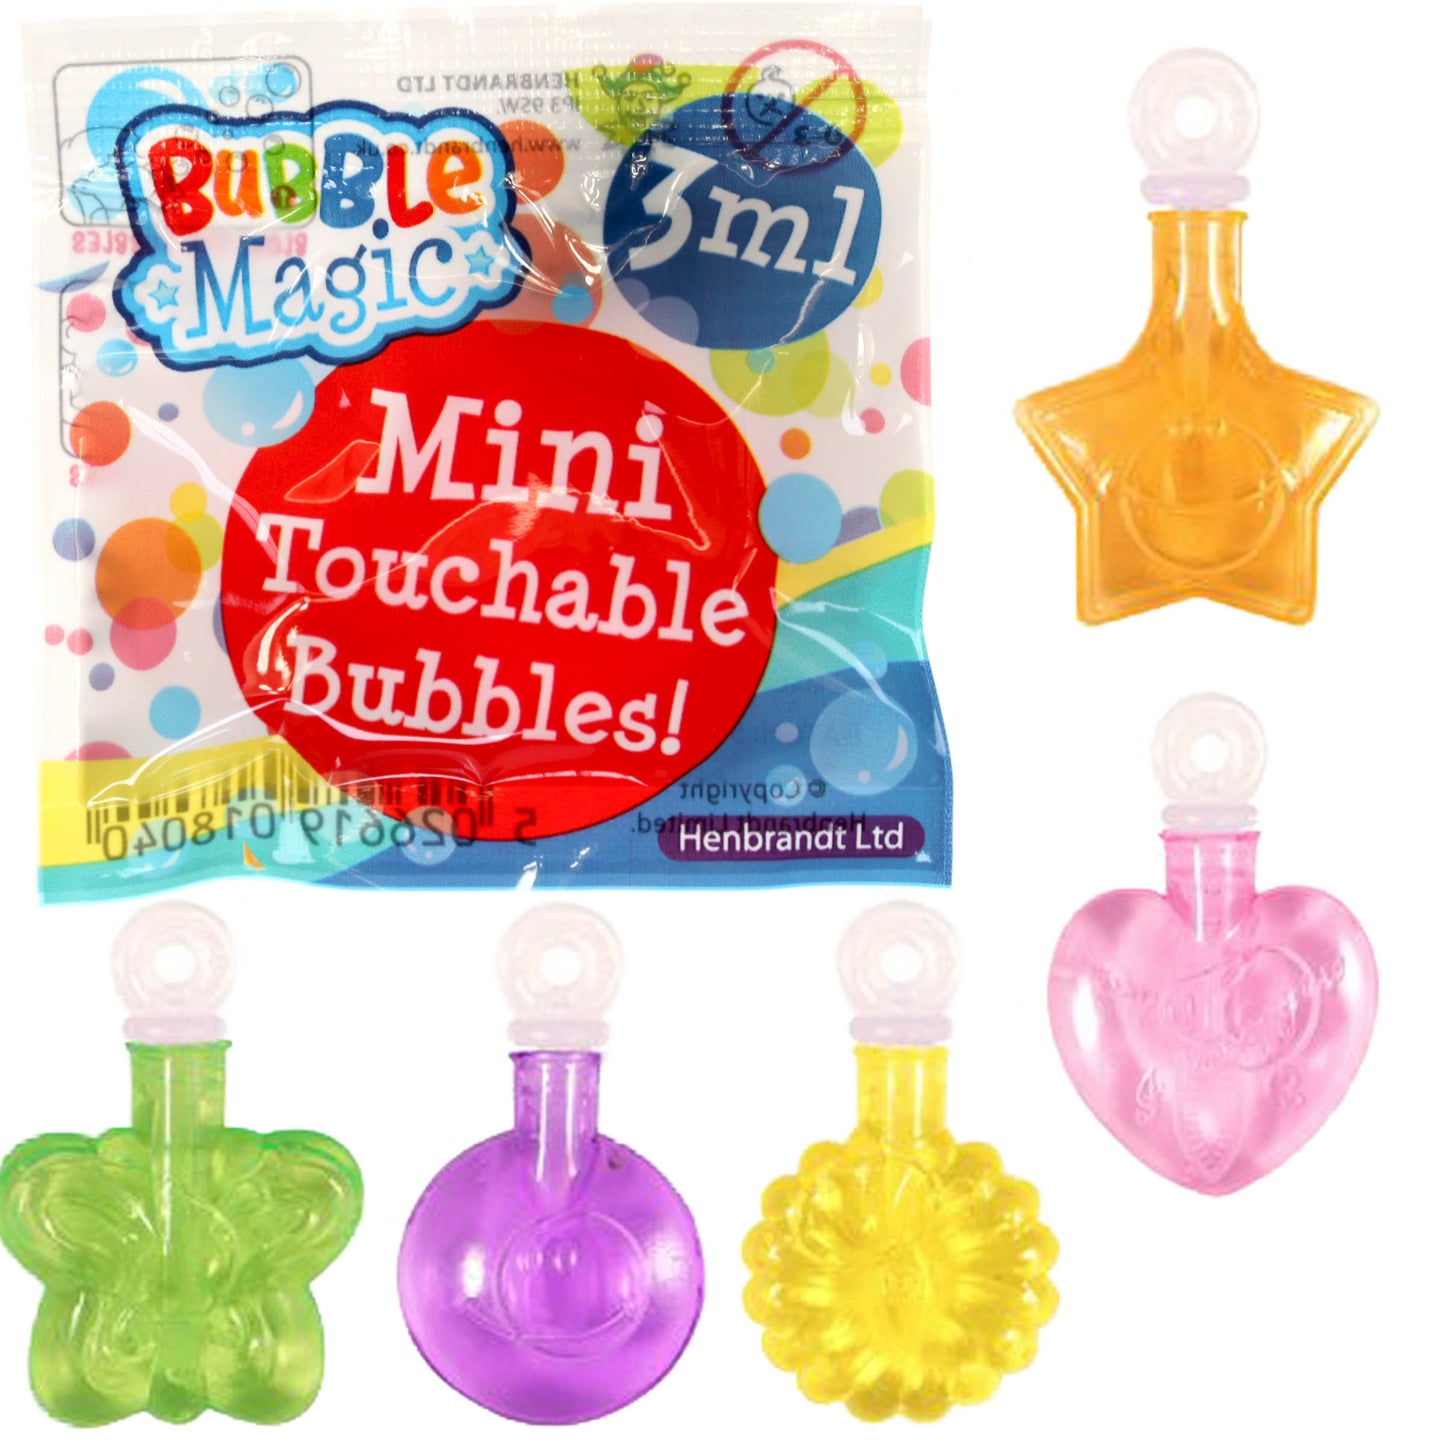 Bubble Magic - Touchable Bubbles